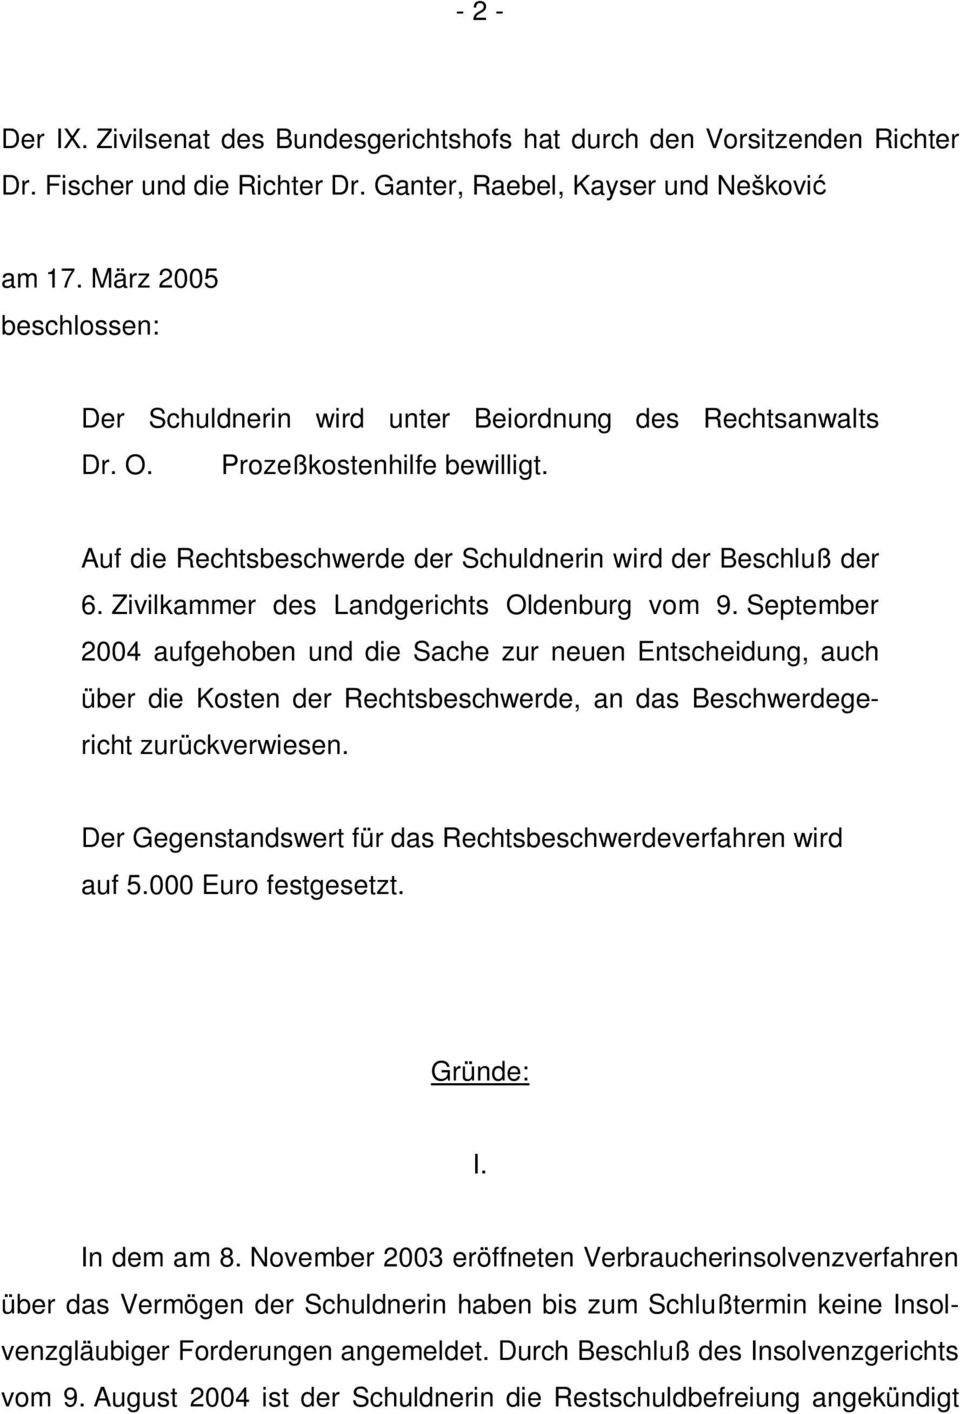 Zivilkammer des Landgerichts Oldenburg vom 9. September 2004 aufgehoben und die Sache zur neuen Entscheidung, auch über die Kosten der Rechtsbeschwerde, an das Beschwerdegericht zurückverwiesen.